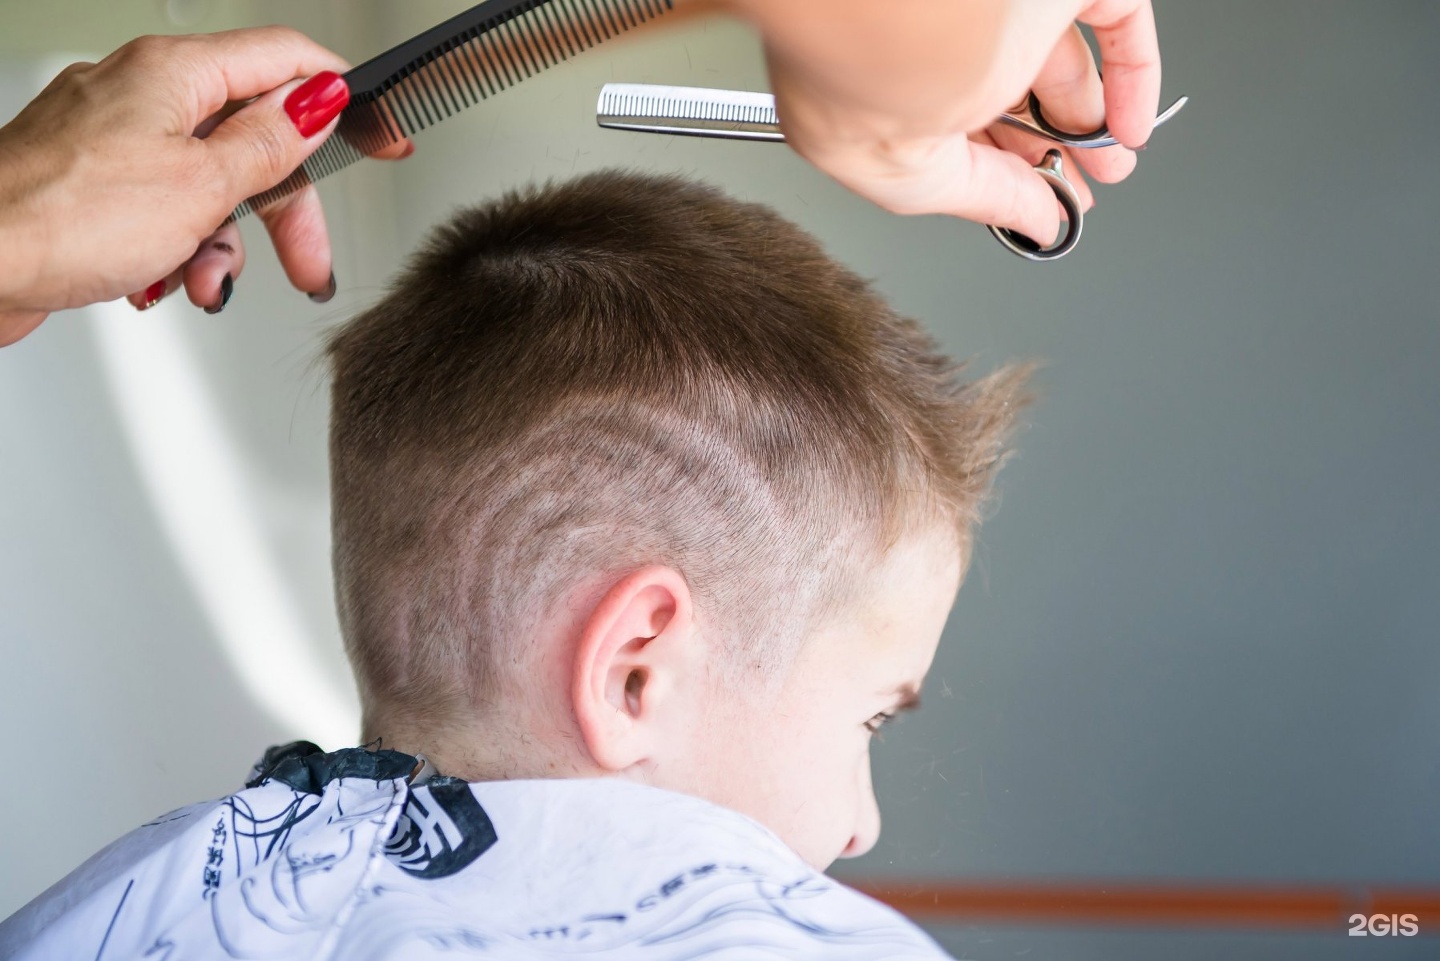 Правильно подстричь ребенка. Студия эстетики волос. Касабланка детская стрижка. Прическа Хэппи. Студия эстетики волос Тамбов.